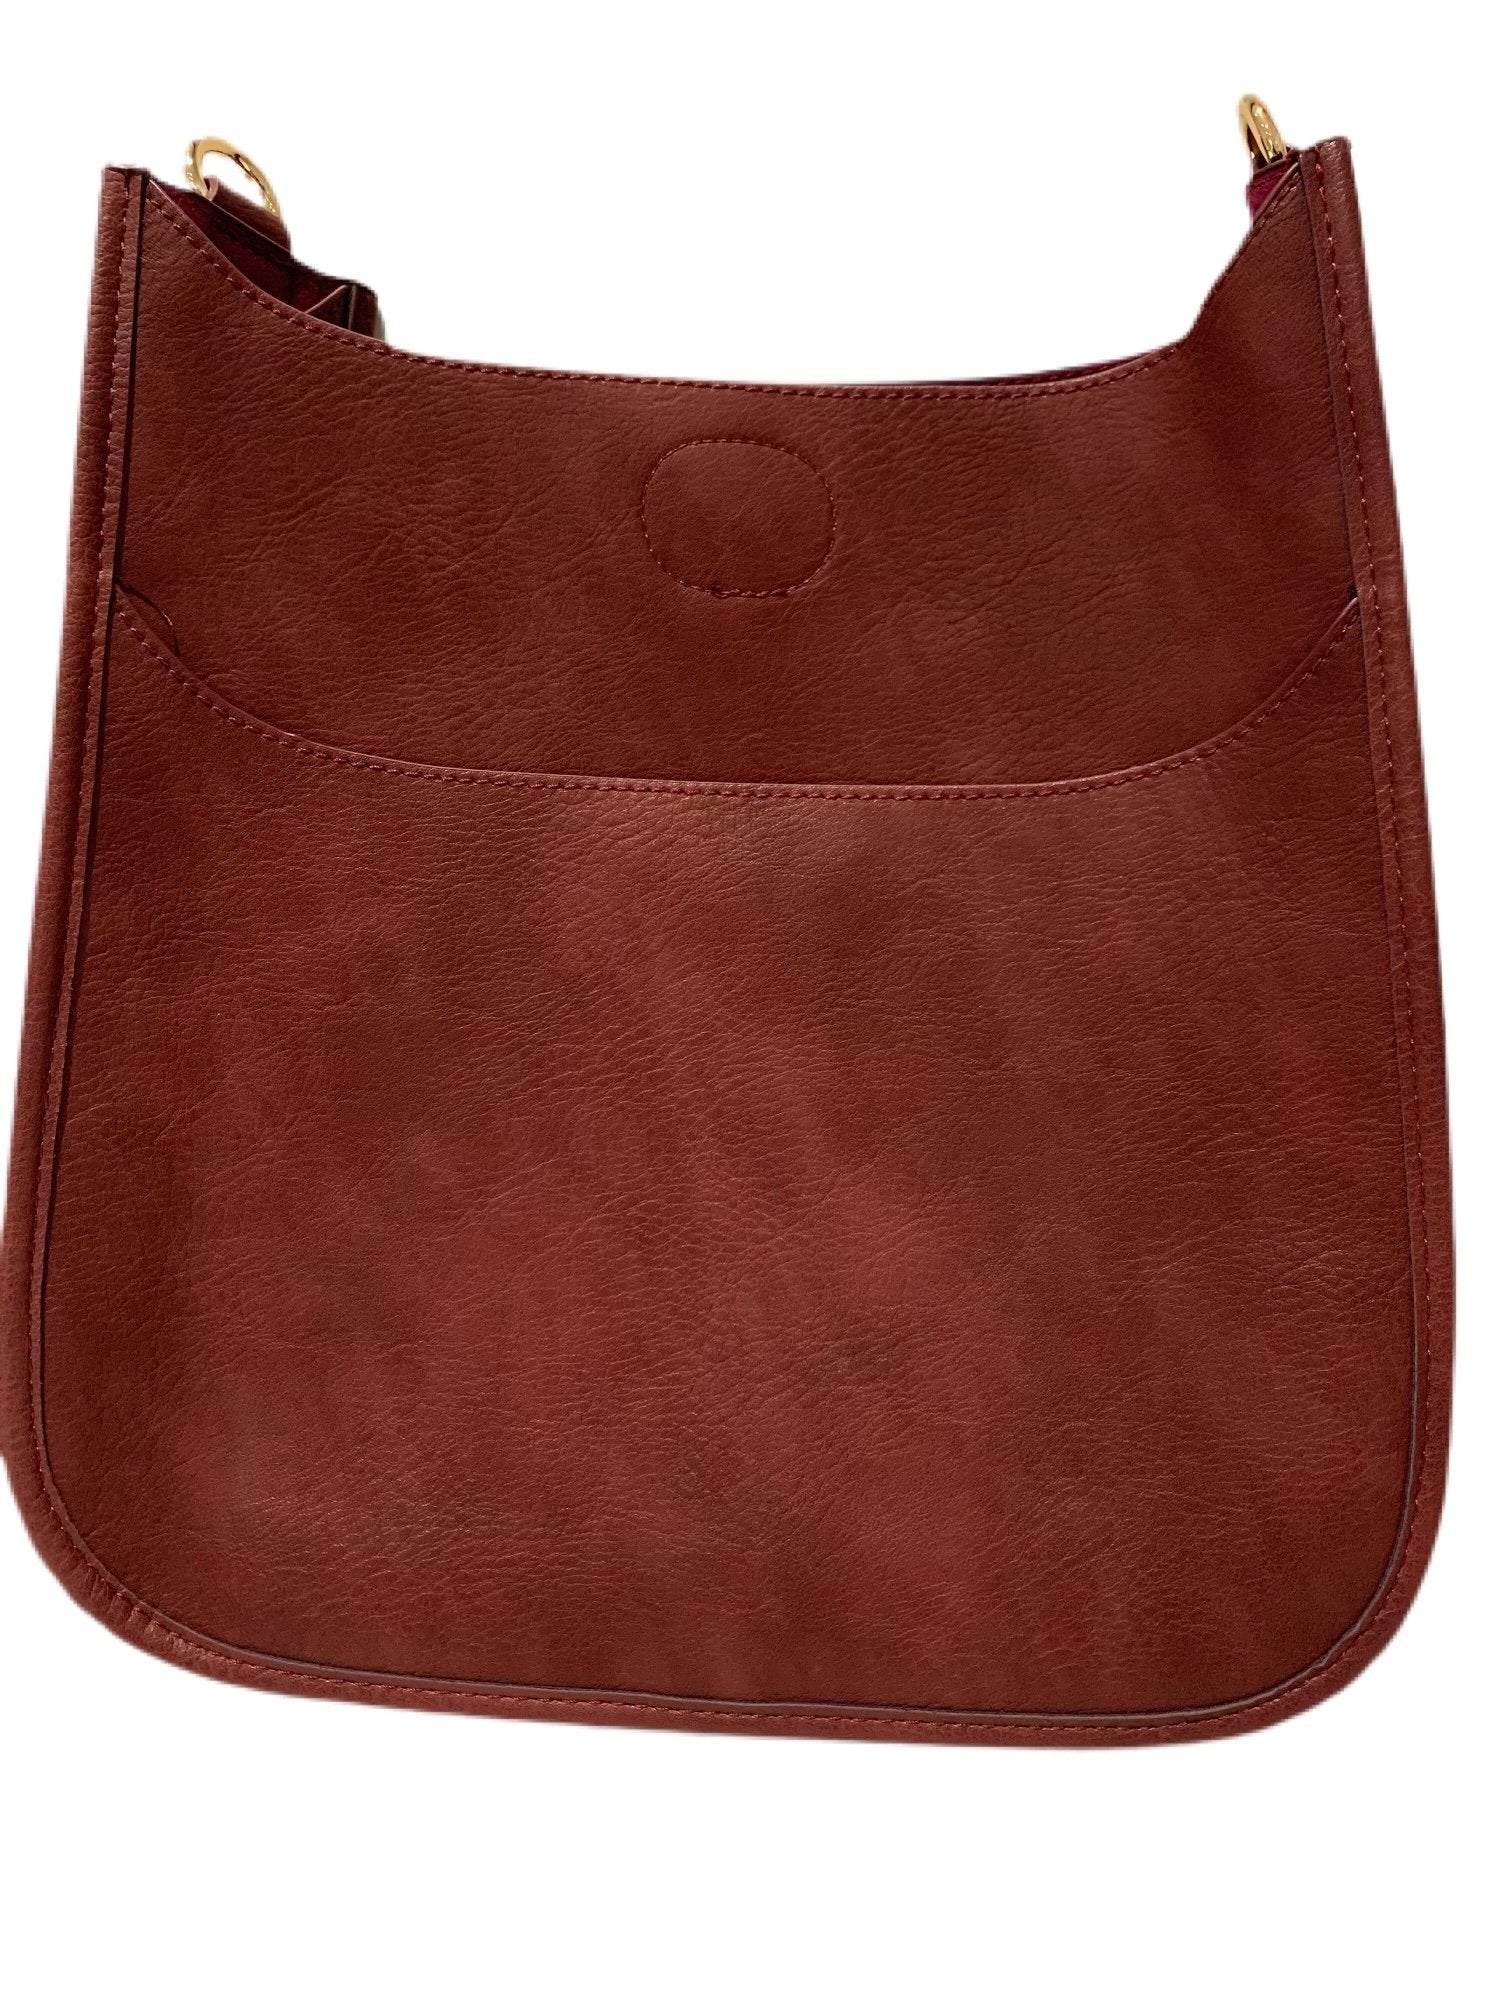 Ahdorned Mini Messenger Bag — Carolee's